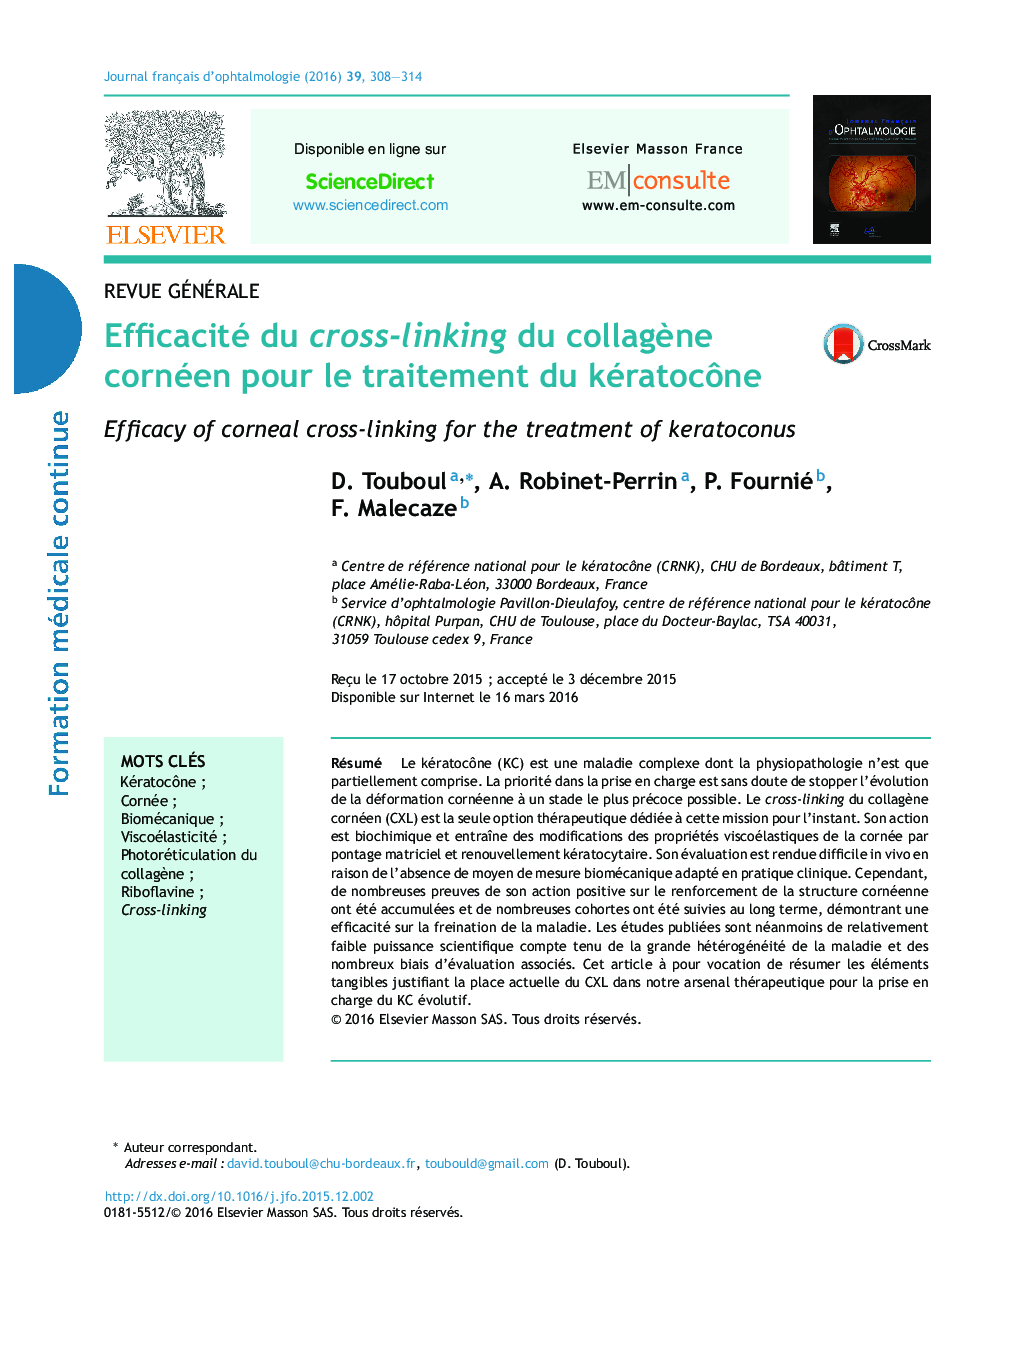 Efficacité du cross-linking du collagène cornéen pour le traitement du kératocône